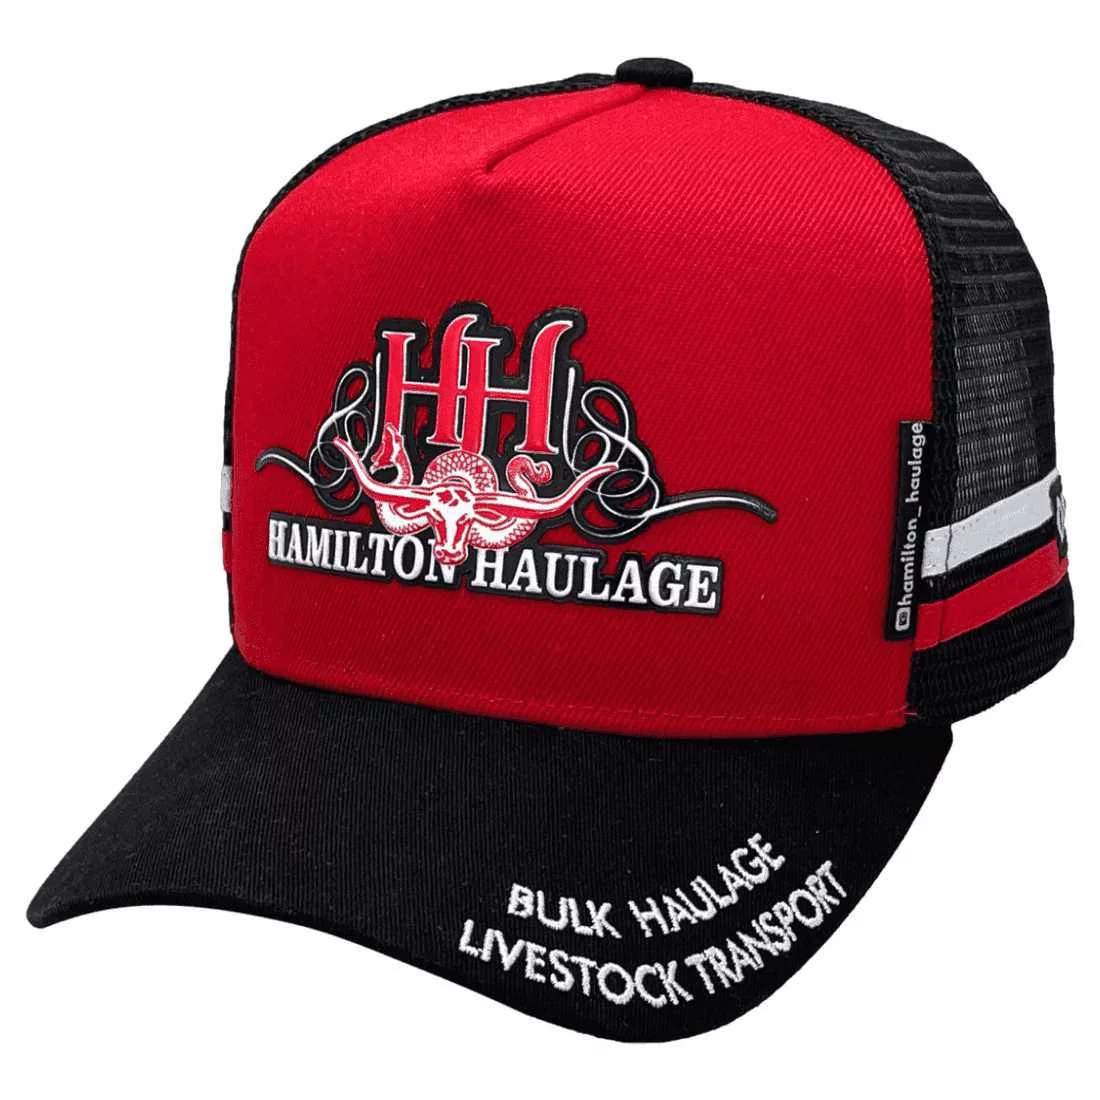 Hamilton Haulage Livestock Transport HP Original Midrange Aussie Trucker Hats with 2 sidebands - Cotton Red/Black